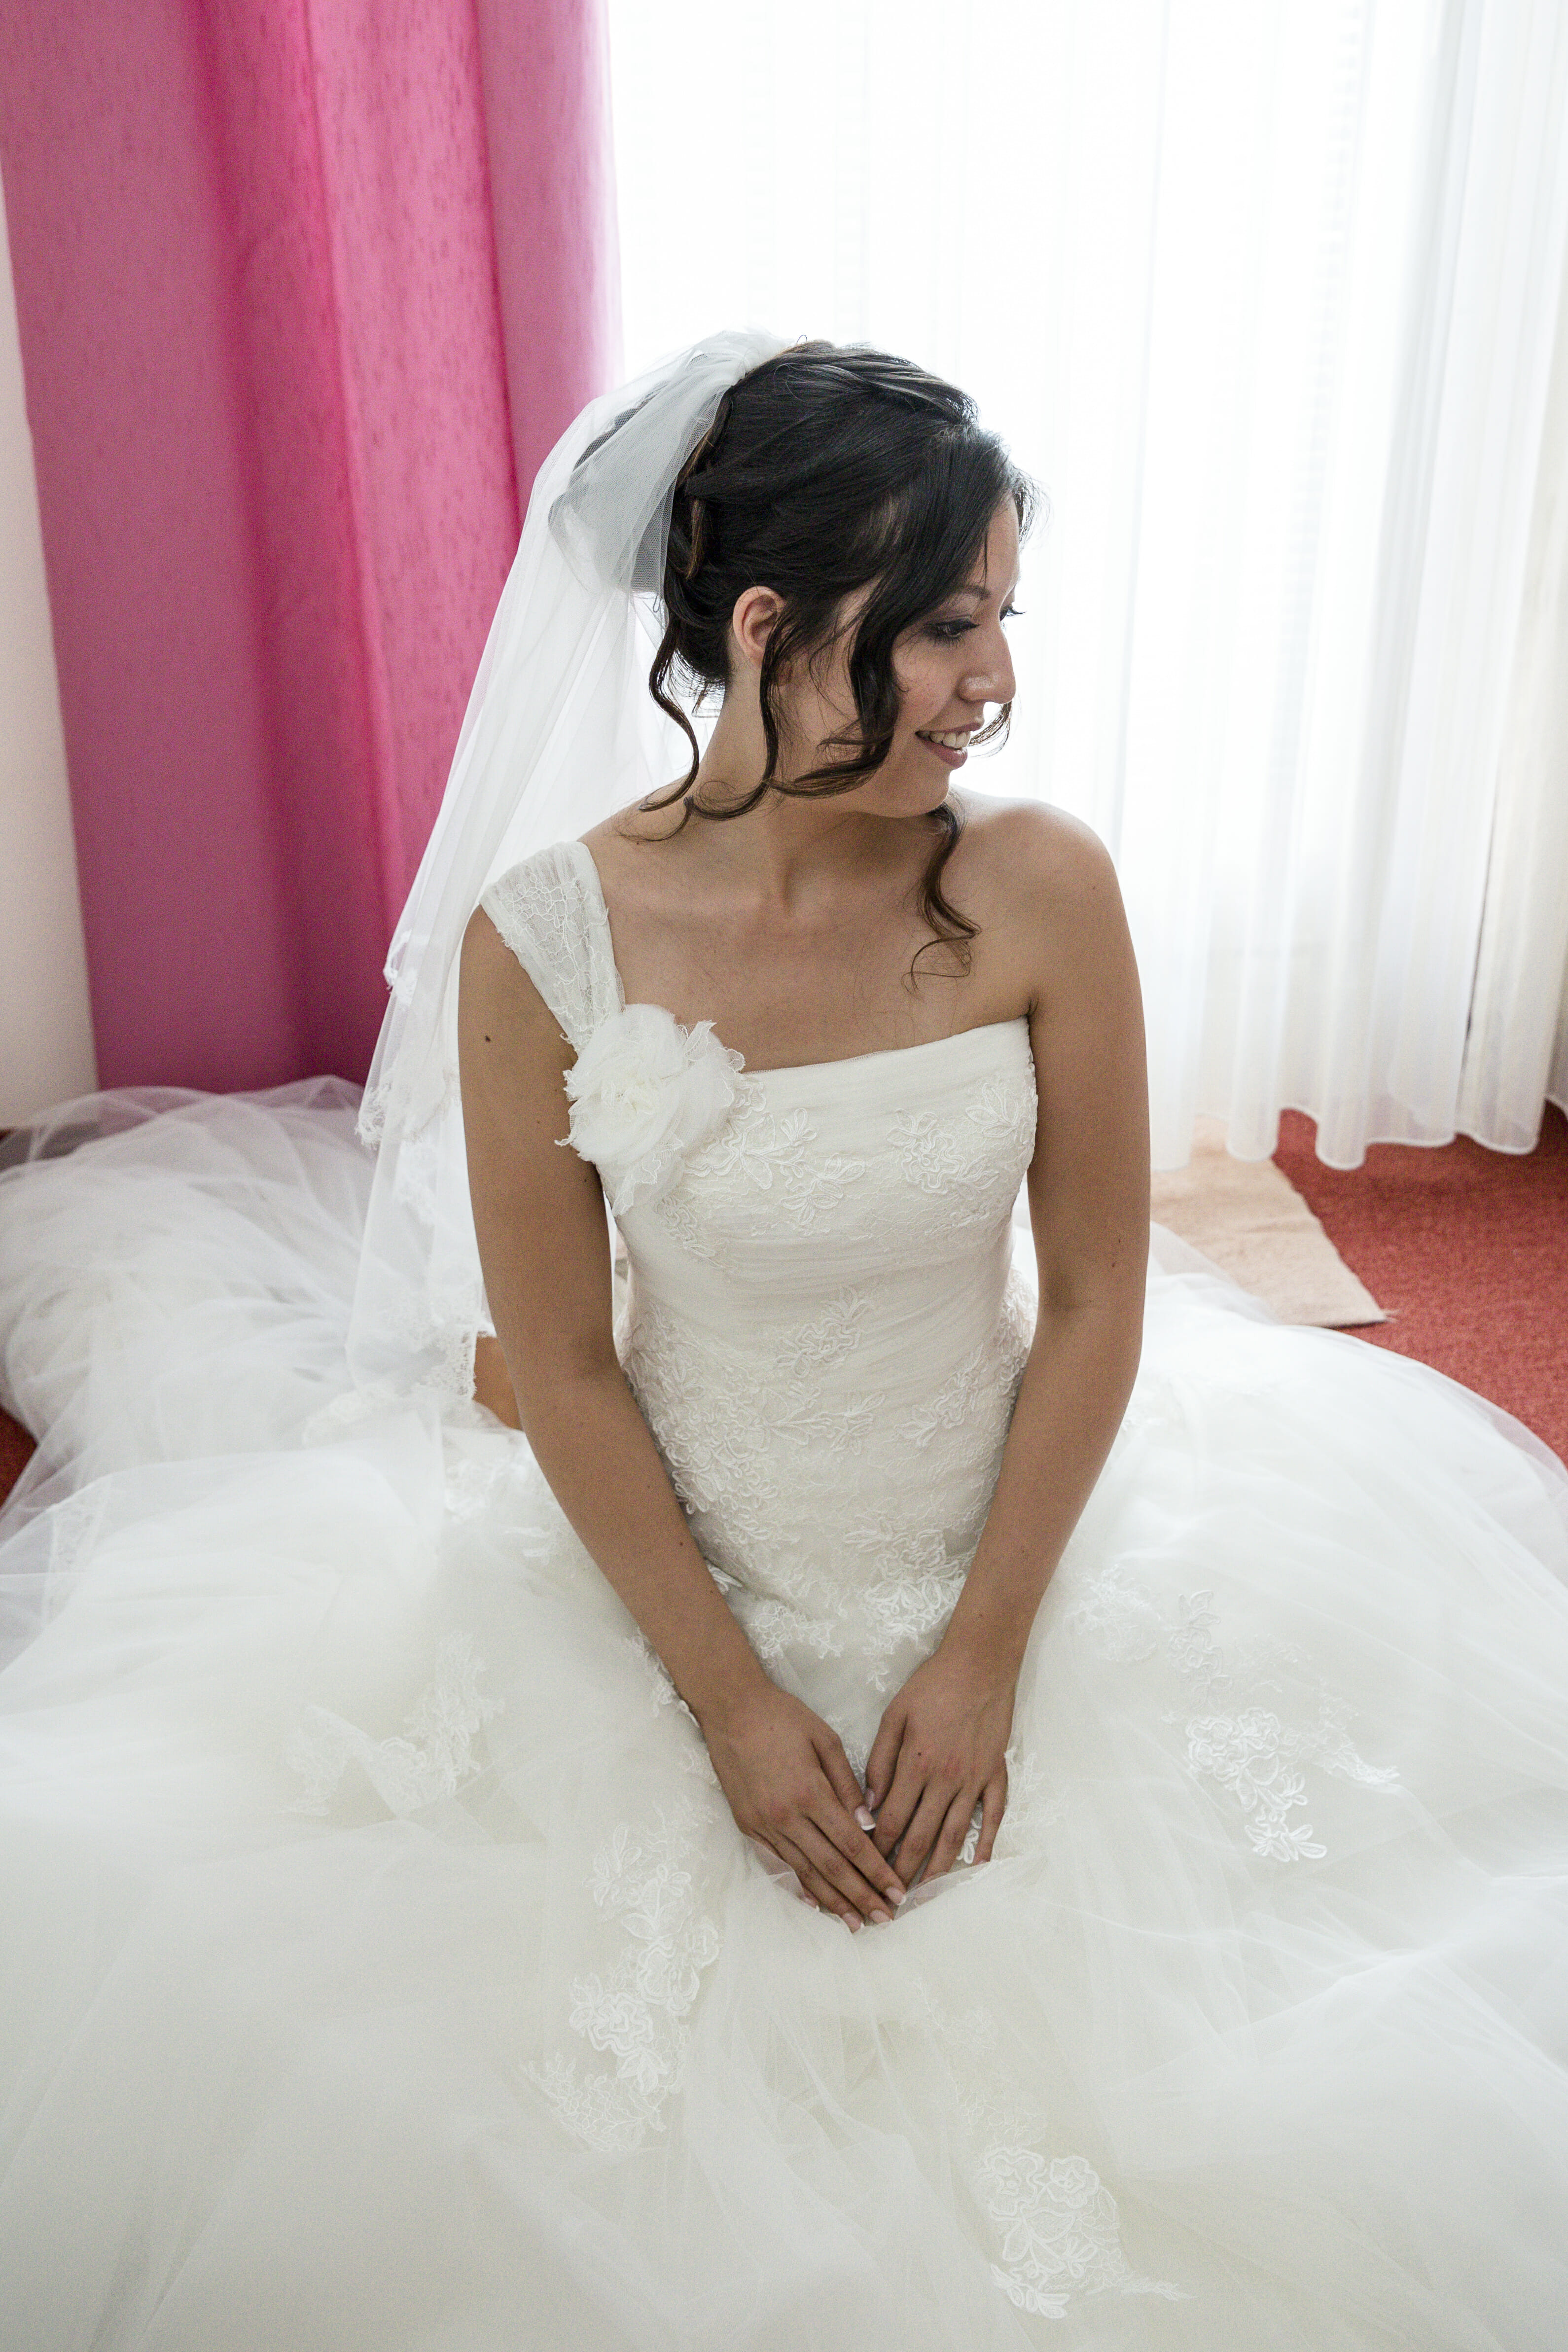 Die Brautfrisur aus Sicht des Hochzeitsfotografen